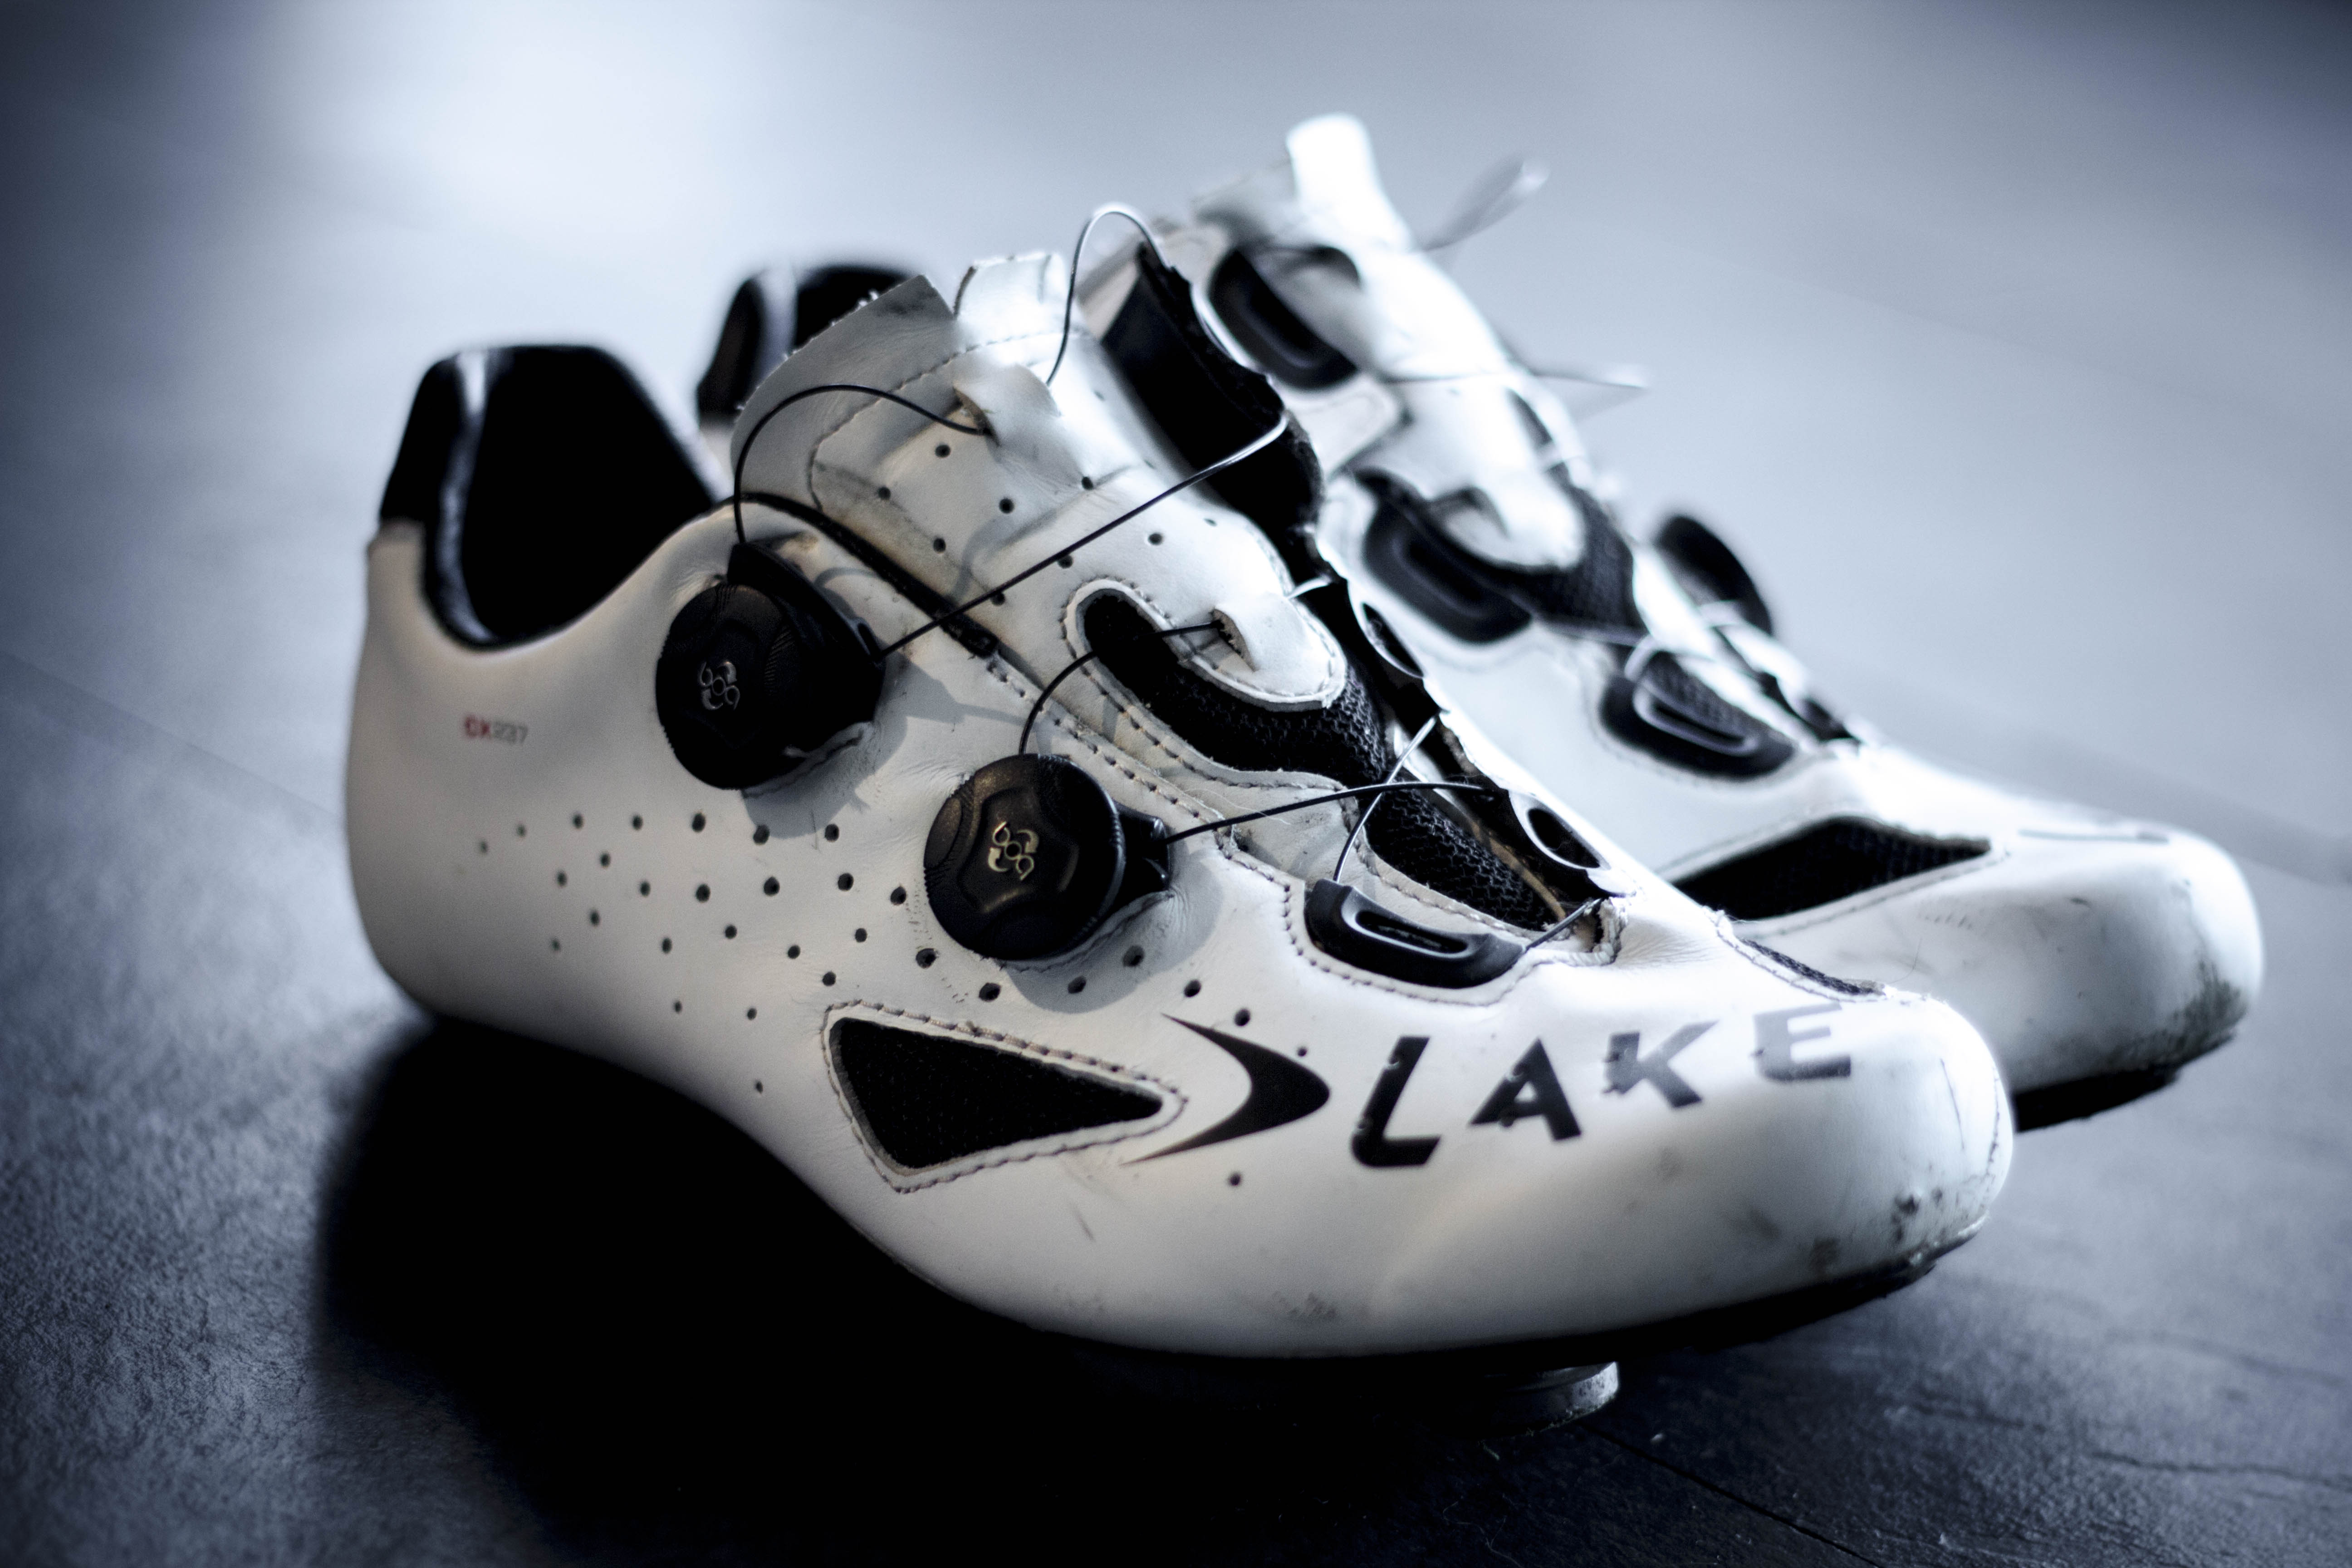 lake cx237 carbon road shoes